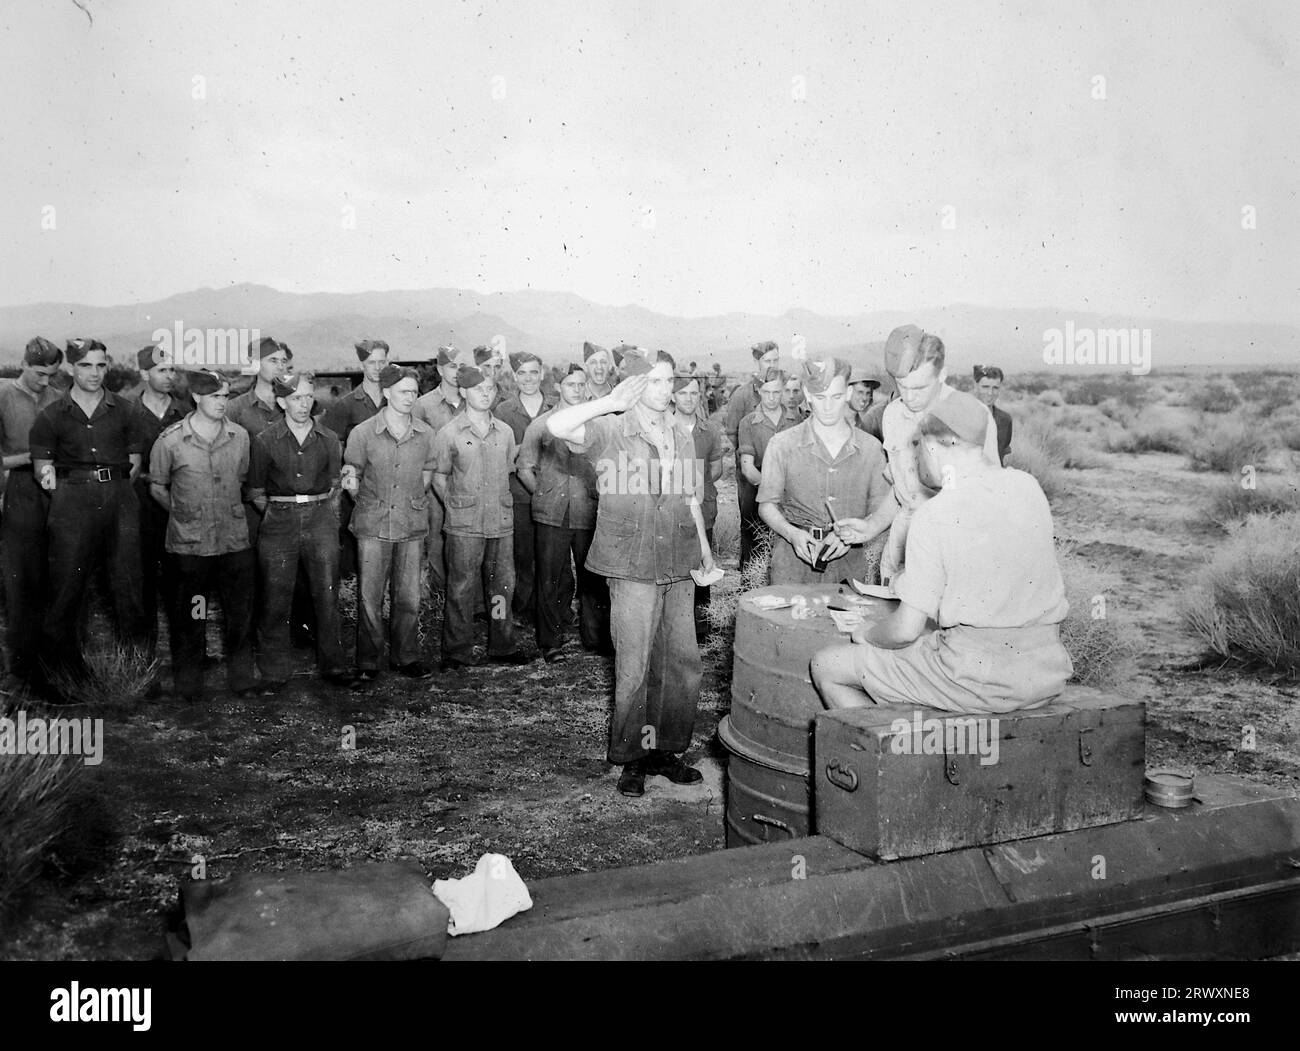 Britische Truppen warten auf ihre Bezahlung in einem Camp in Texas. Seltenes Foto: Aus einer Sammlung eines unbekannten britischen Soldaten über die No. 1 Composite Demonstration, AA Battery, Tour durch die USA, vom 11. Juli 1943. Dies ist eines von mehr als hundert Bildern in der Sammlung, die im Durchschnitt etwa 4 x 3 Zoll groß waren. Stockfoto